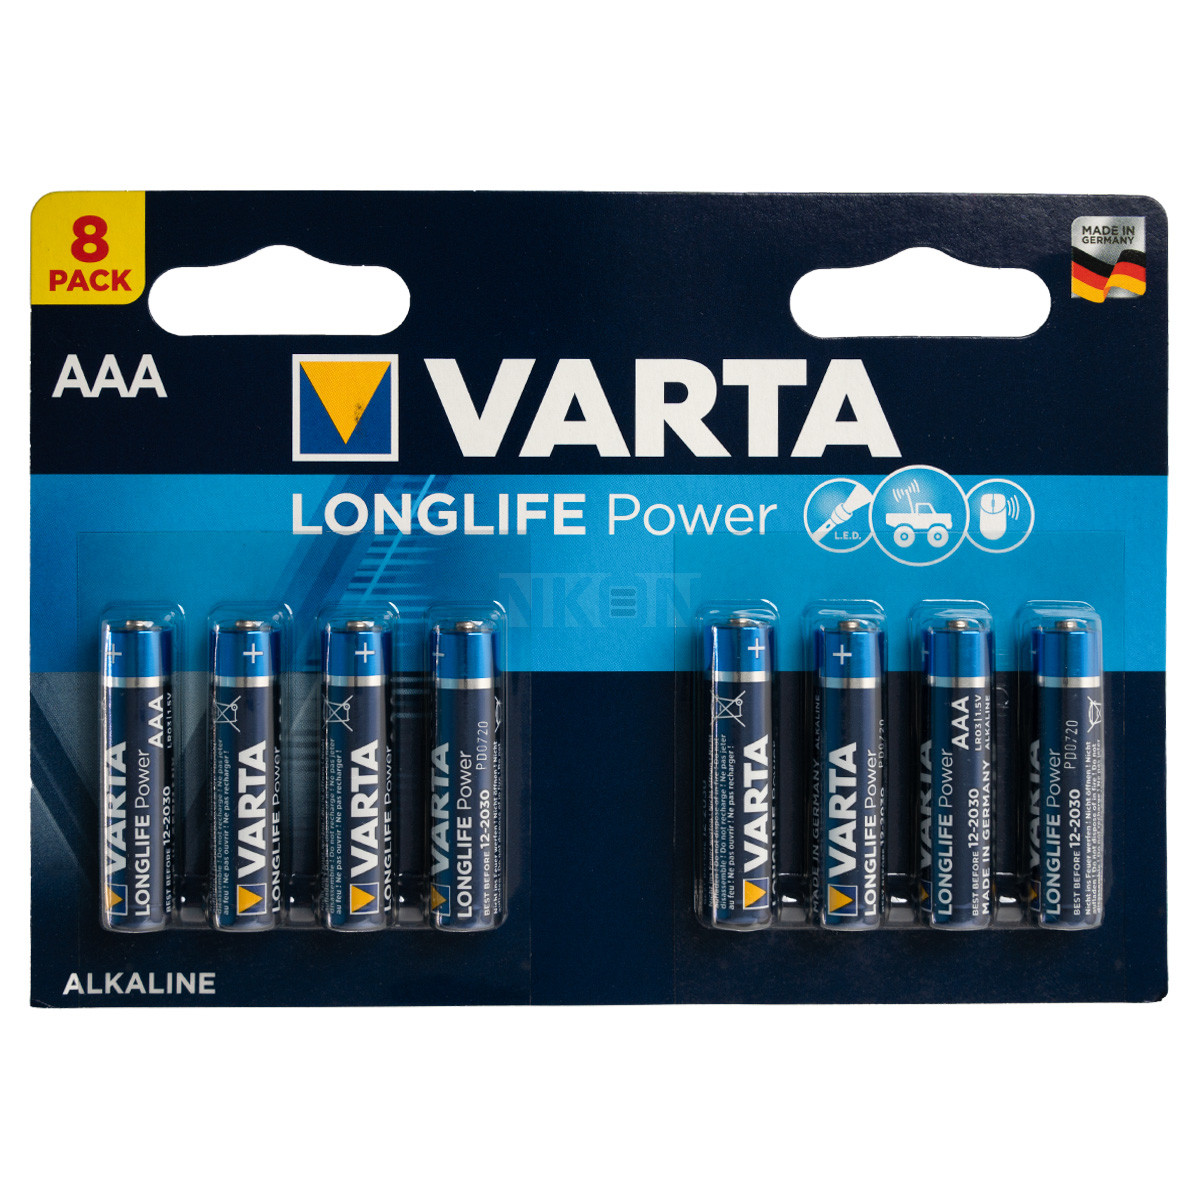 8 AAA Varta Longlife Power - 1.5V - AAA - Alkaline - Disposable